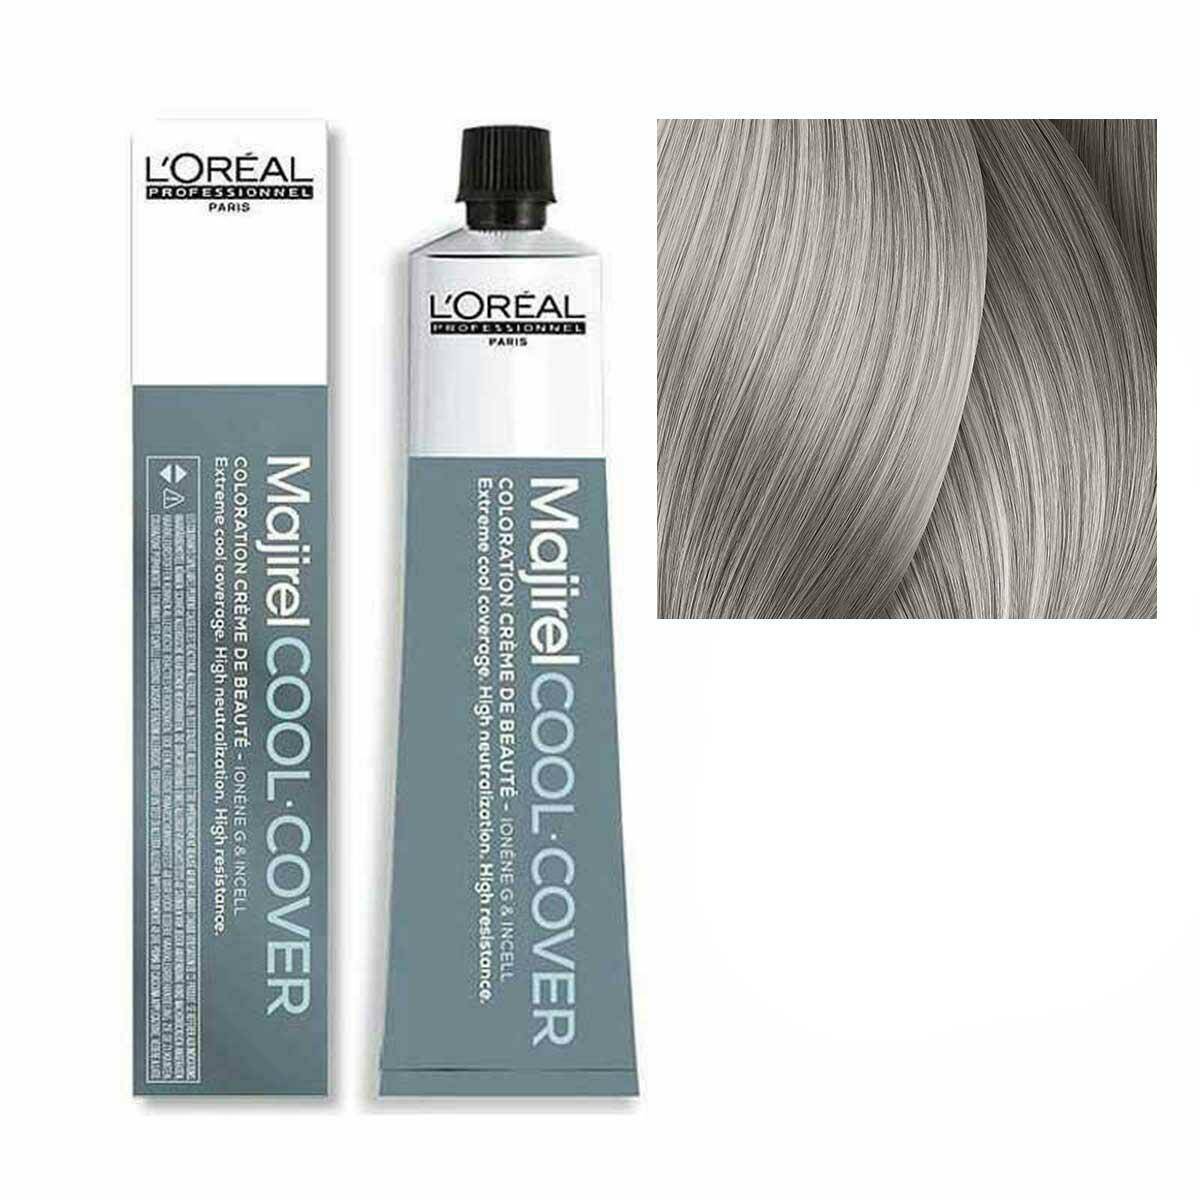 Loreal Majirel Cool Cover Farba do włosów - 9.1 Bardzo jasny blond popielaty, chłodne odcienie 50ml